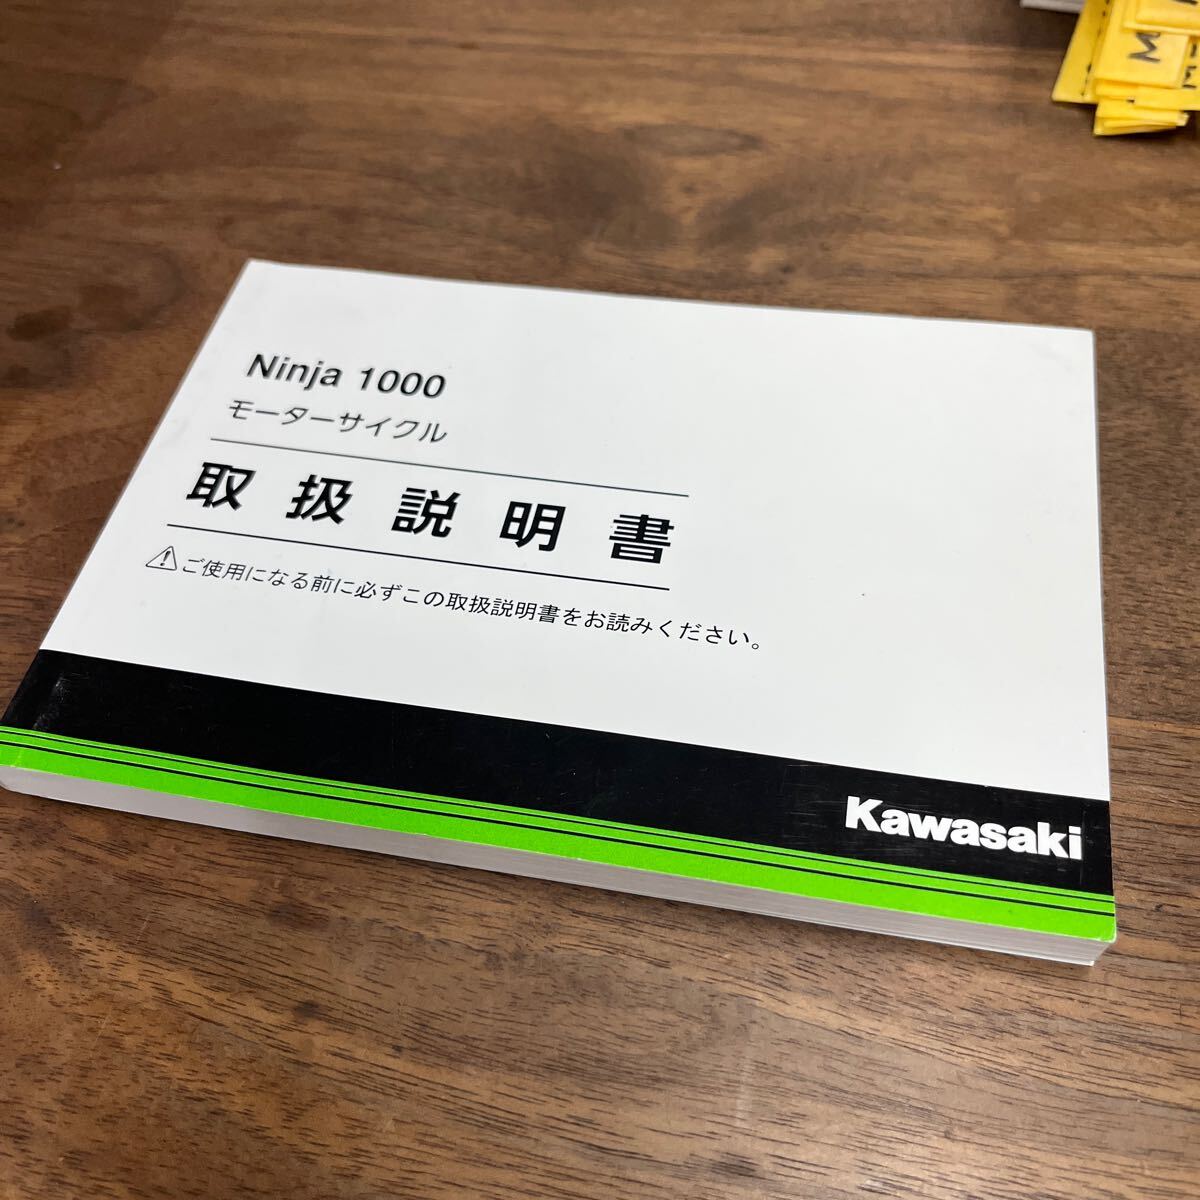 MB-3070★クリックポスト(全国一律送料185円) Kawasaki カワサキ モーターサイクル Ninja1000 取扱説明書 99921-0295 2017.1.17 M-1/②_画像2